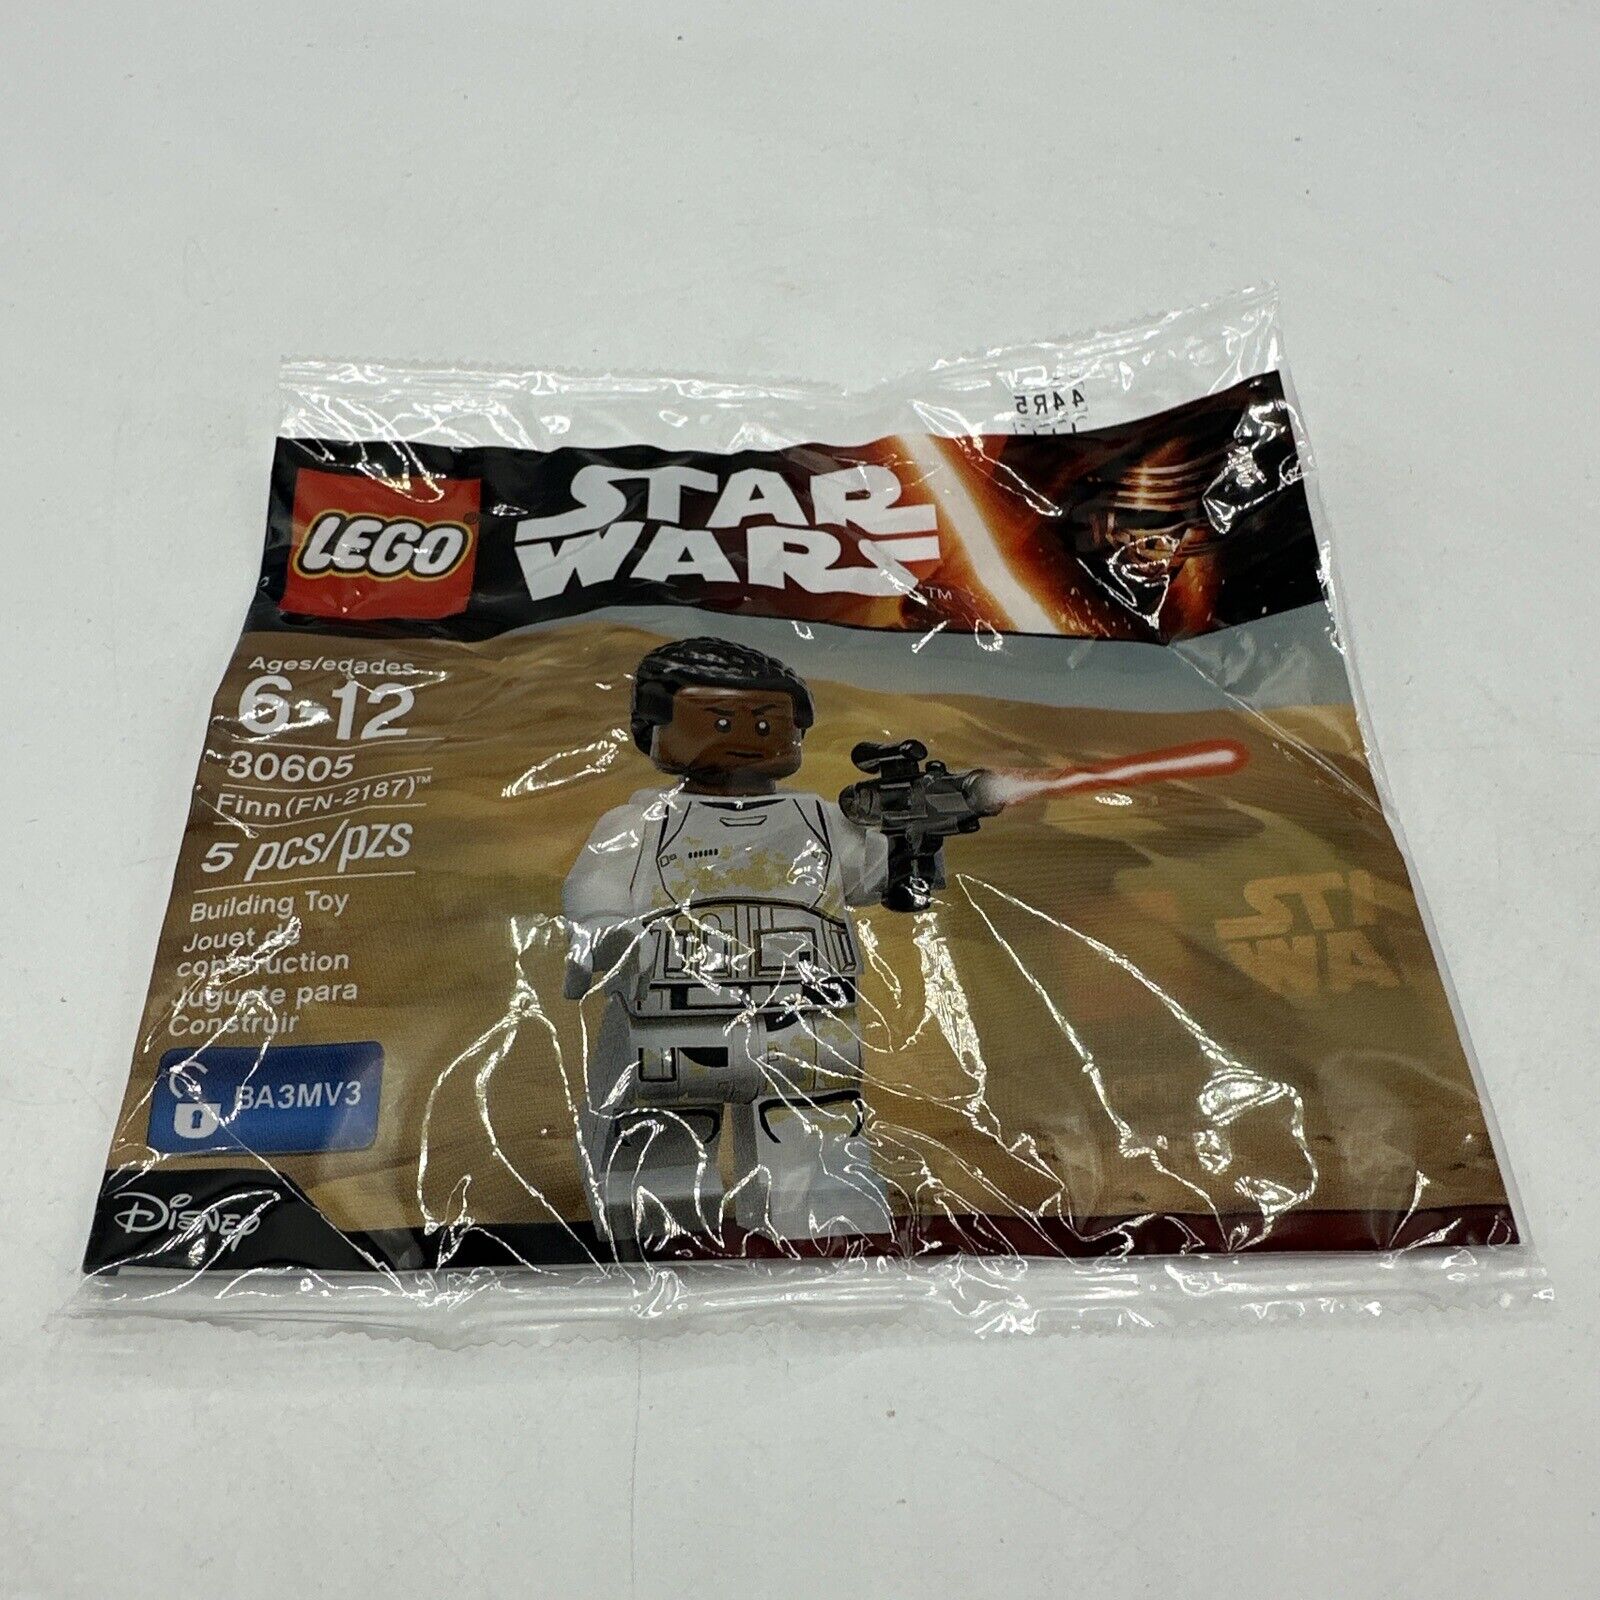 LEGO Star Wars: Finn (FN-2187) (30605) New Sealed